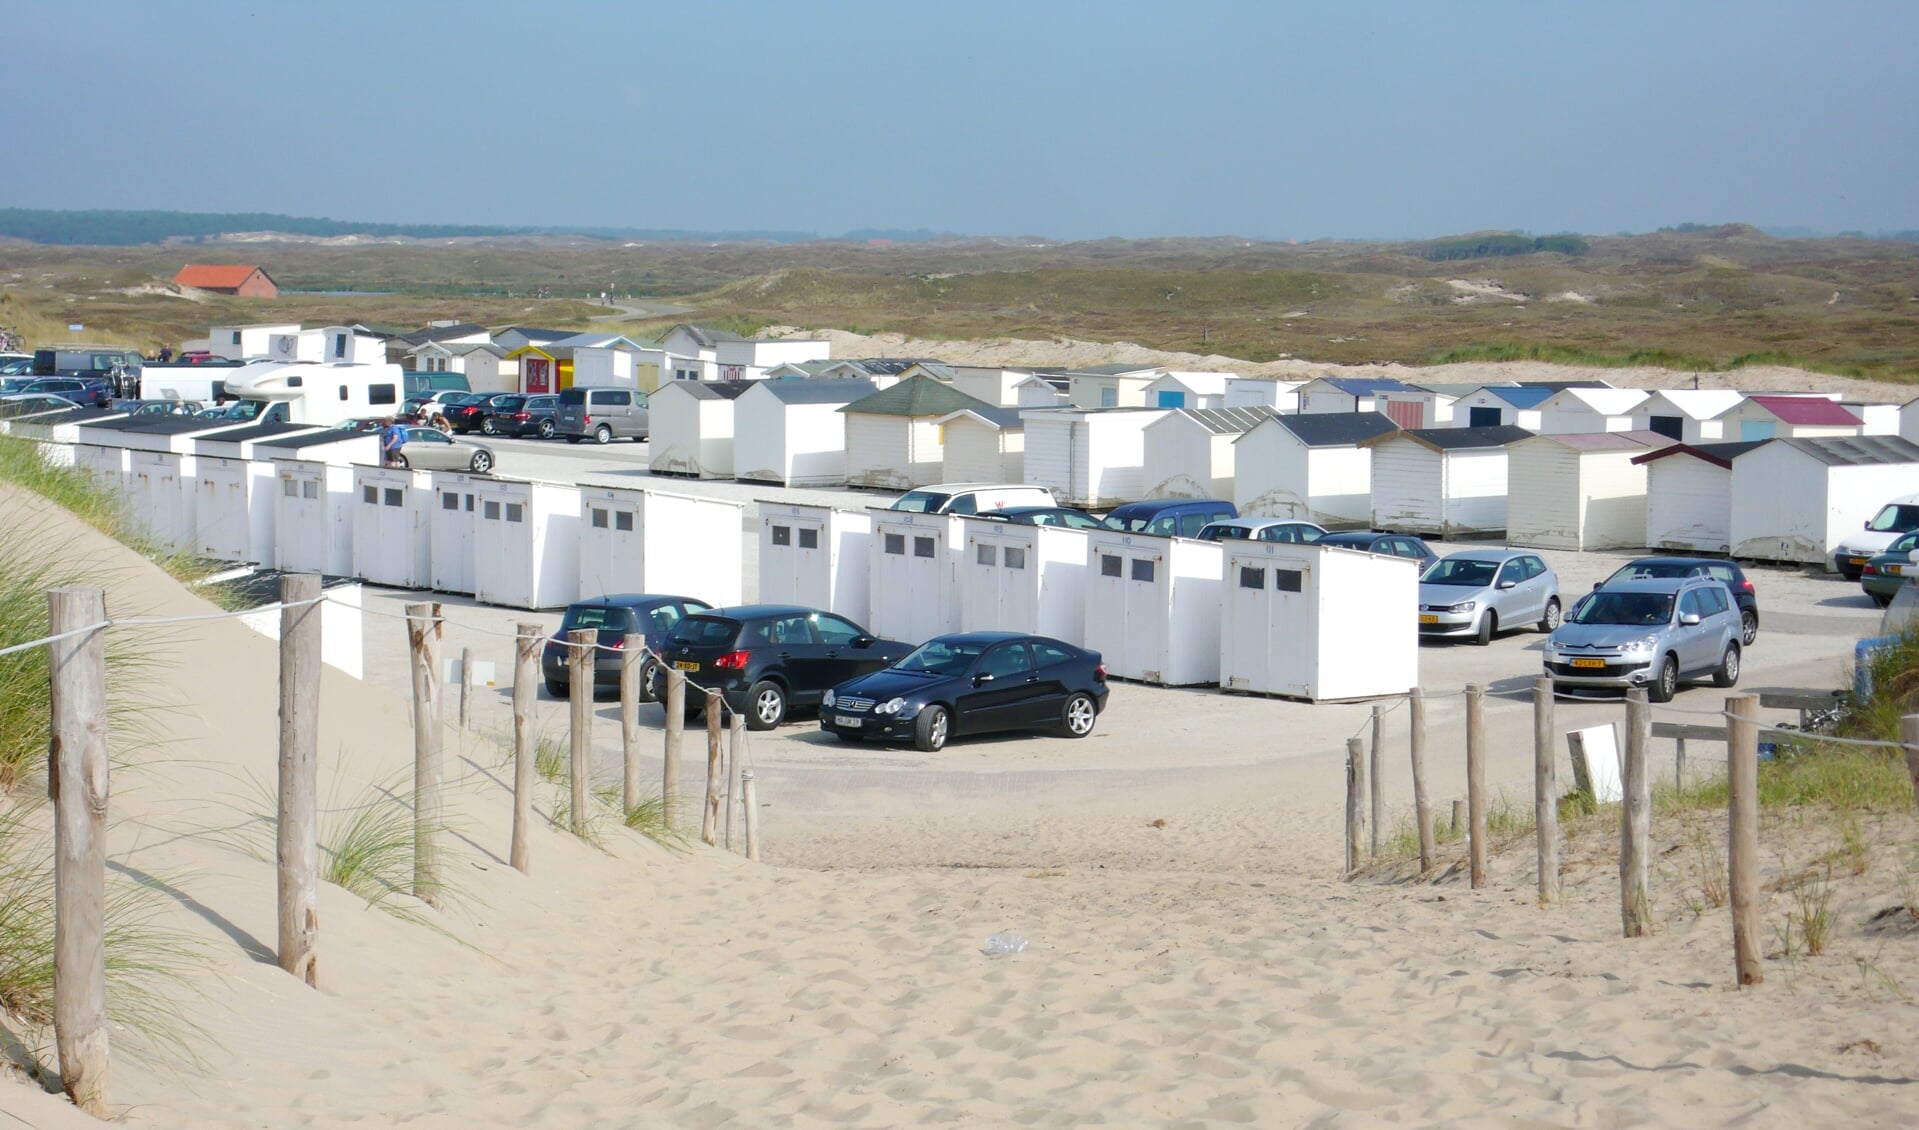 De opslag van strandhuisjes op een parkeerterrein een paar jaar geleden.